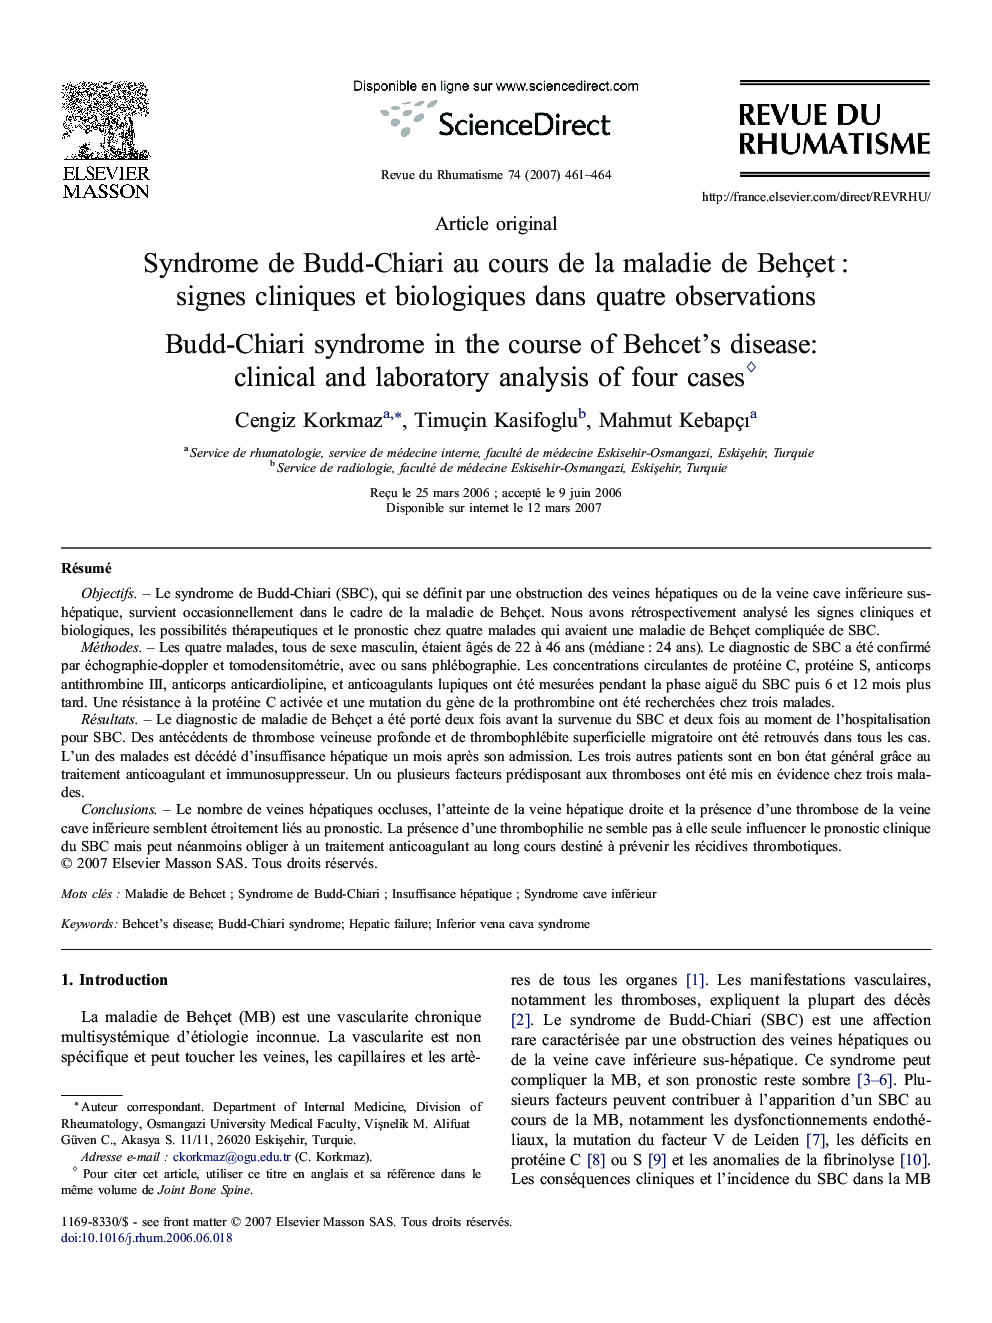 Syndrome de Budd-Chiari au cours de la maladie de Behçet : signes cliniques et biologiques dans quatre observations